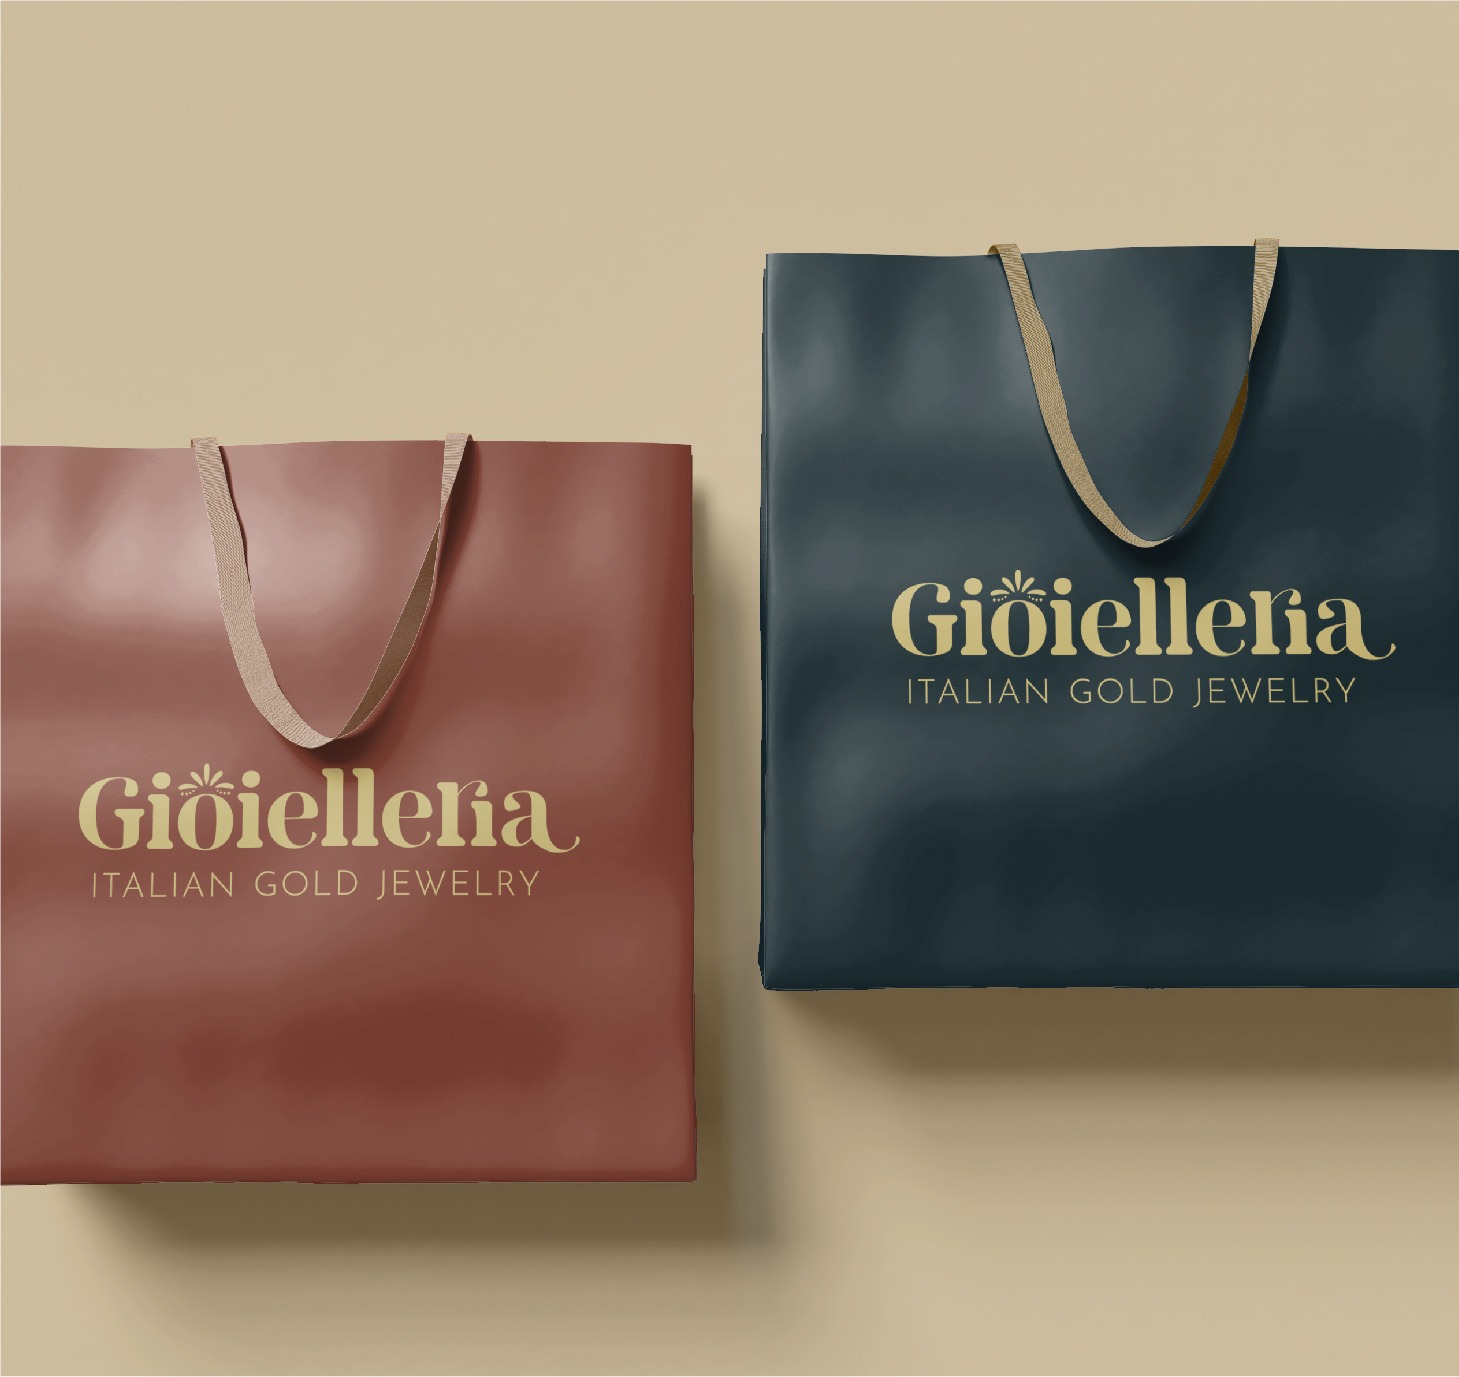 Mockup - Sacs imprimés avec logo de marque Gioielleria - Sarah La Selva